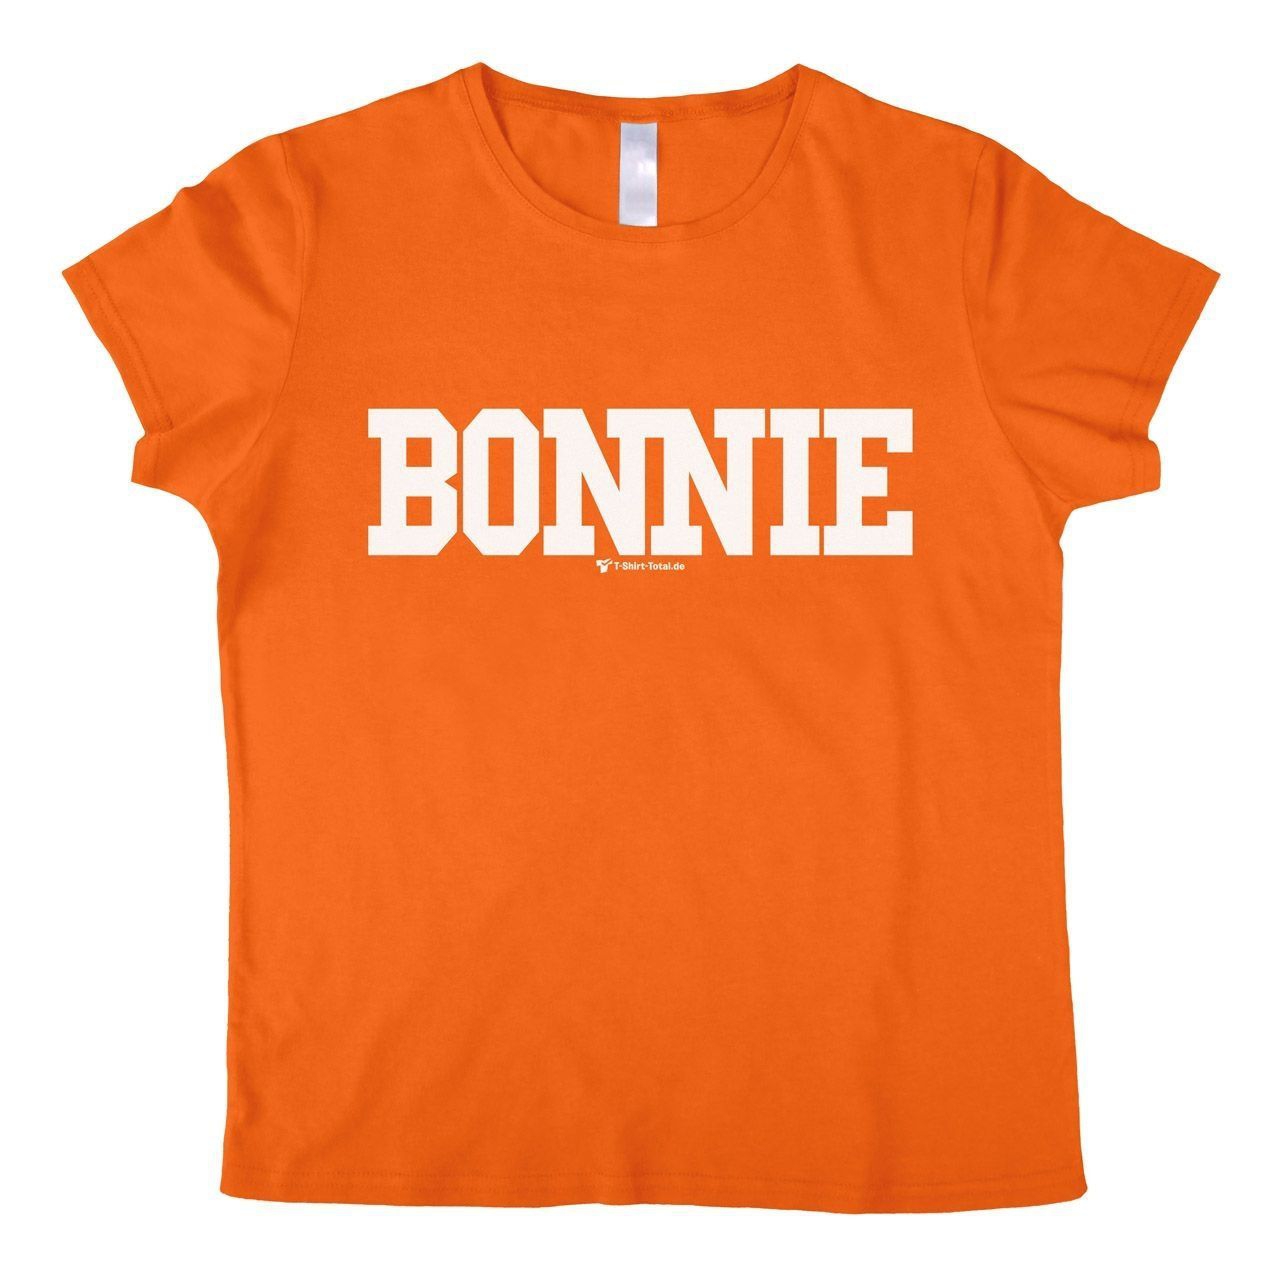 Bonnie Woman T-Shirt orange Large